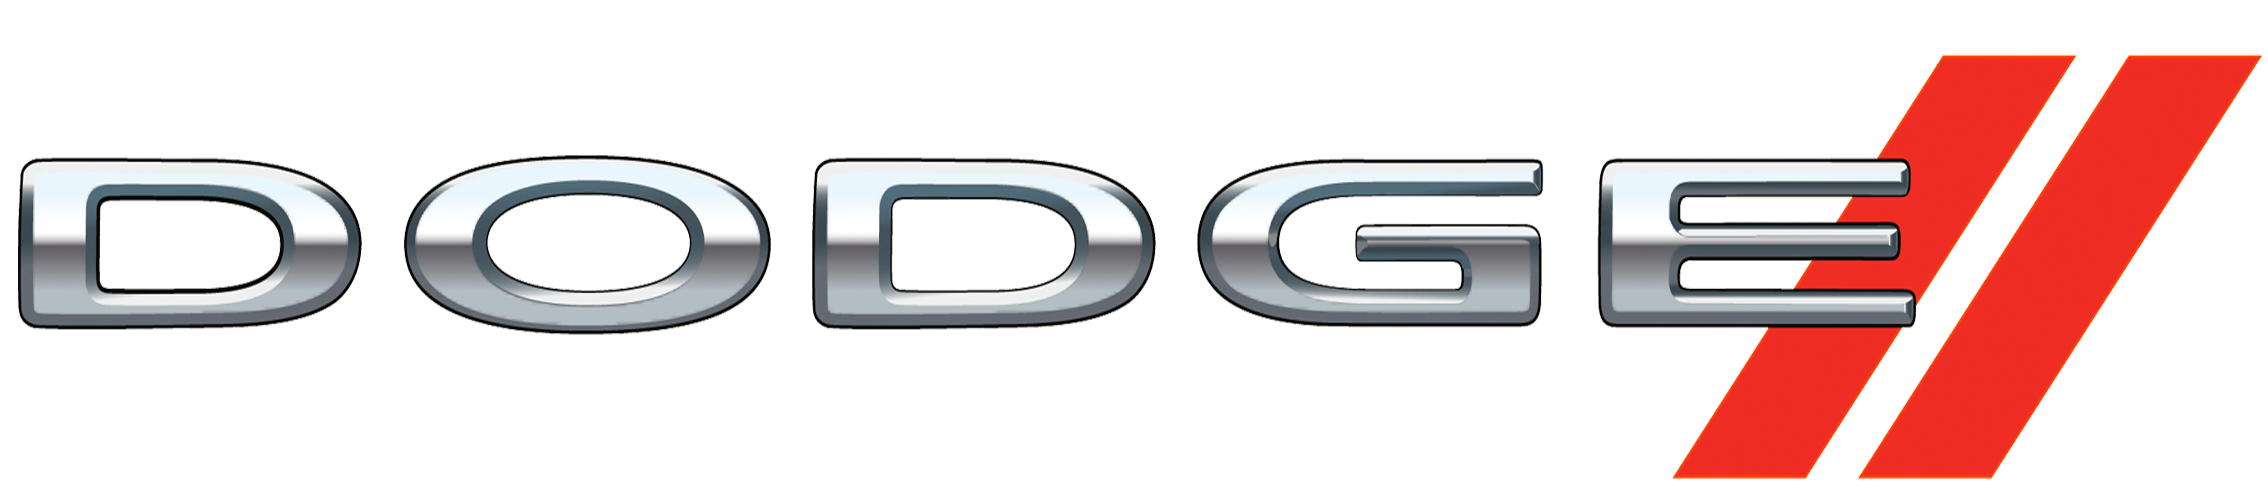 logo-Dodge.png